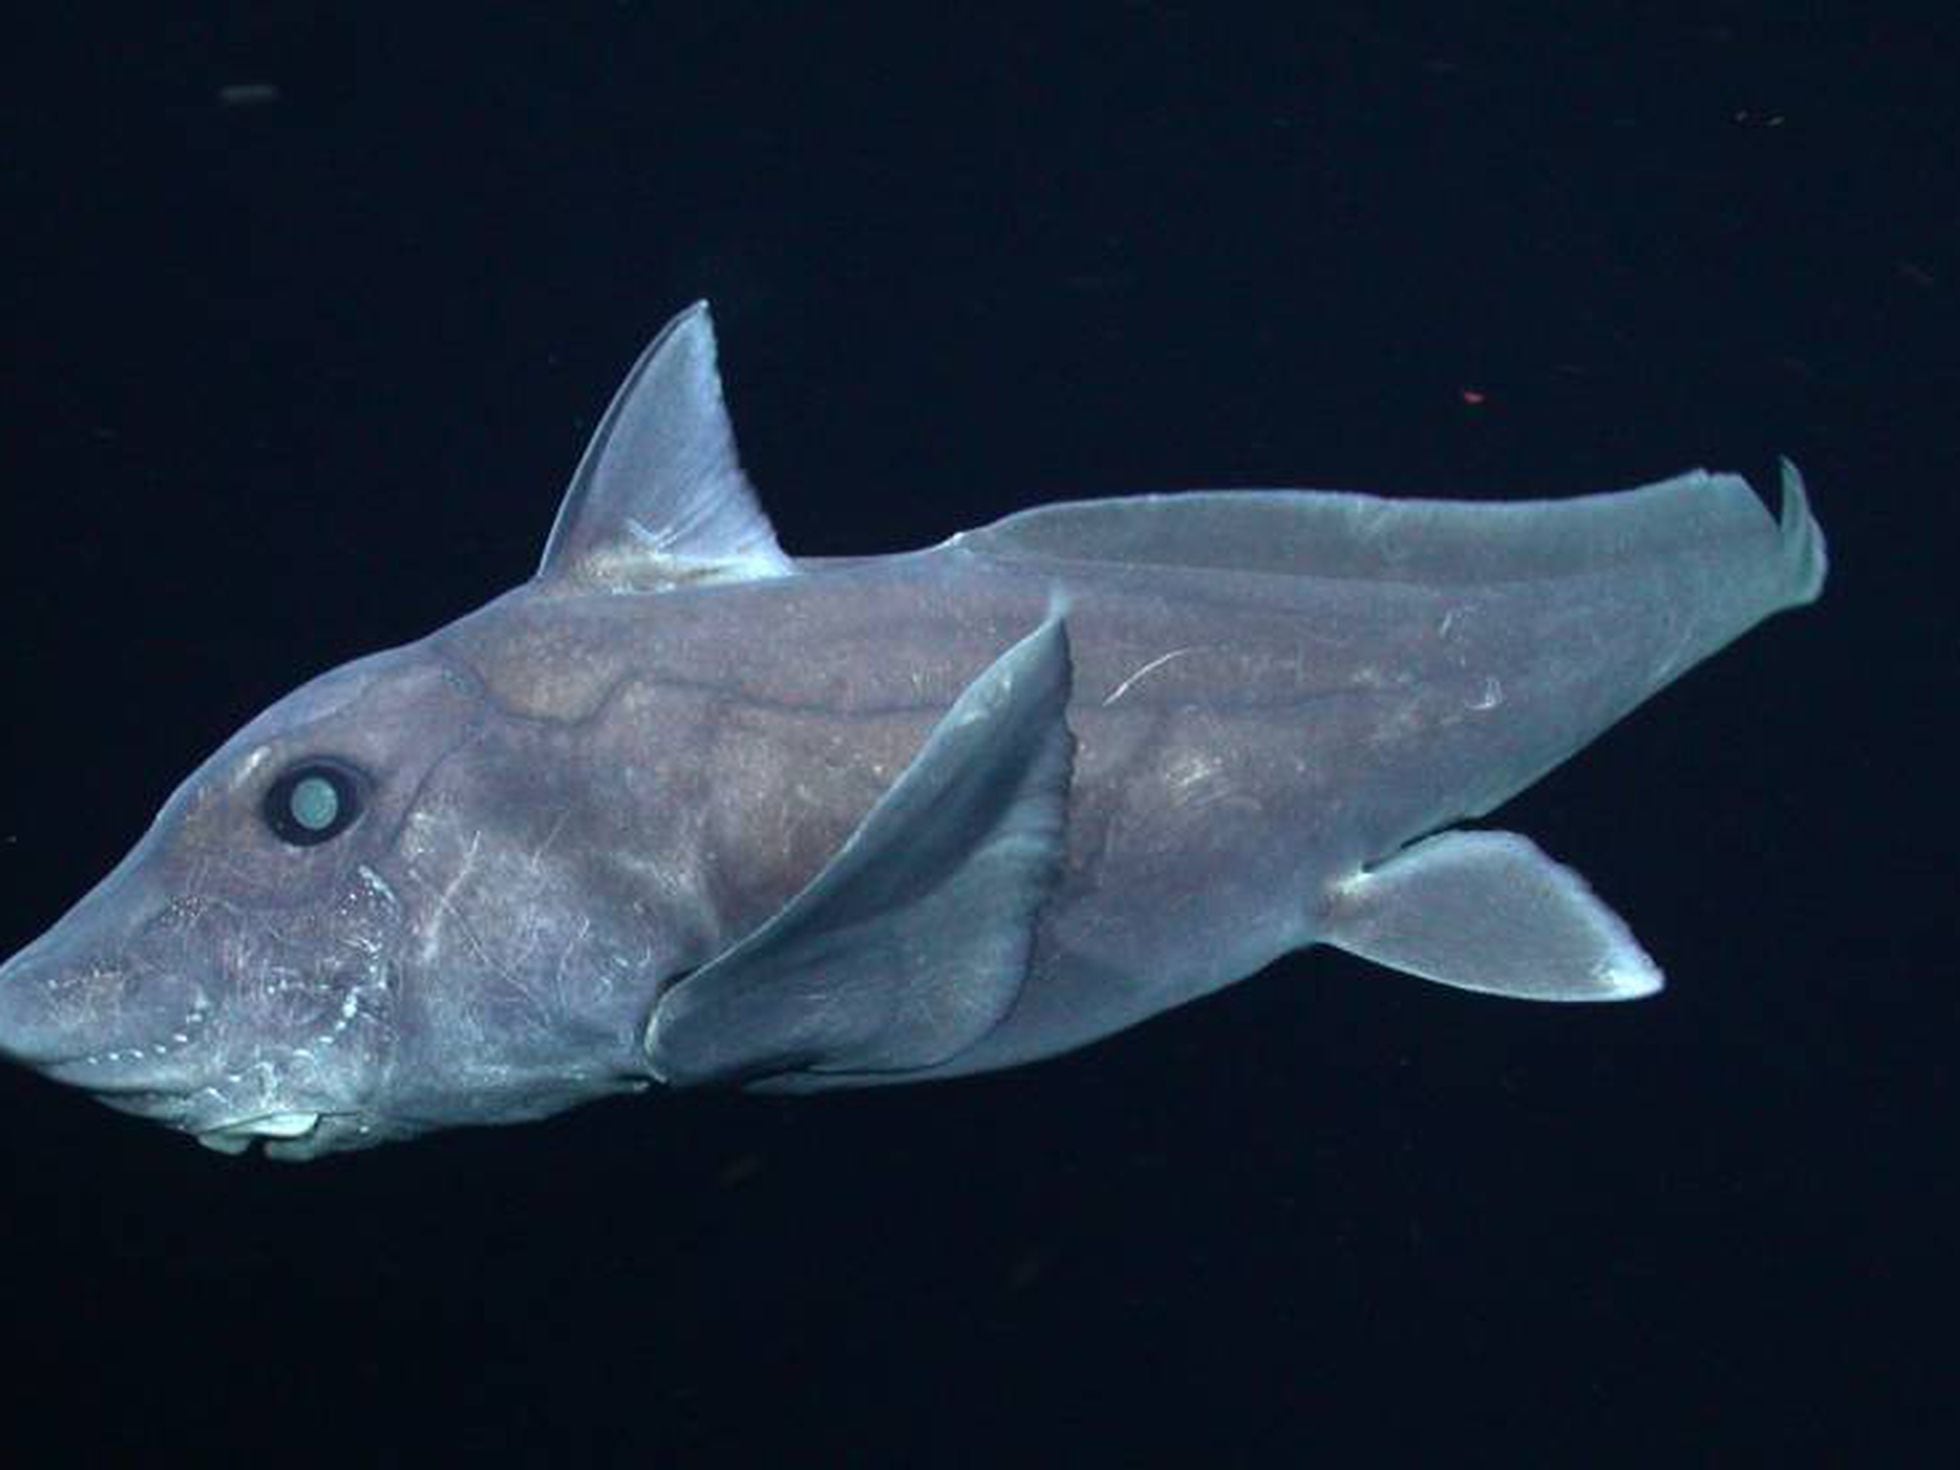 Graban por primera vez a un tiburón fantasma con vida | Ciencia | EL PAÍS